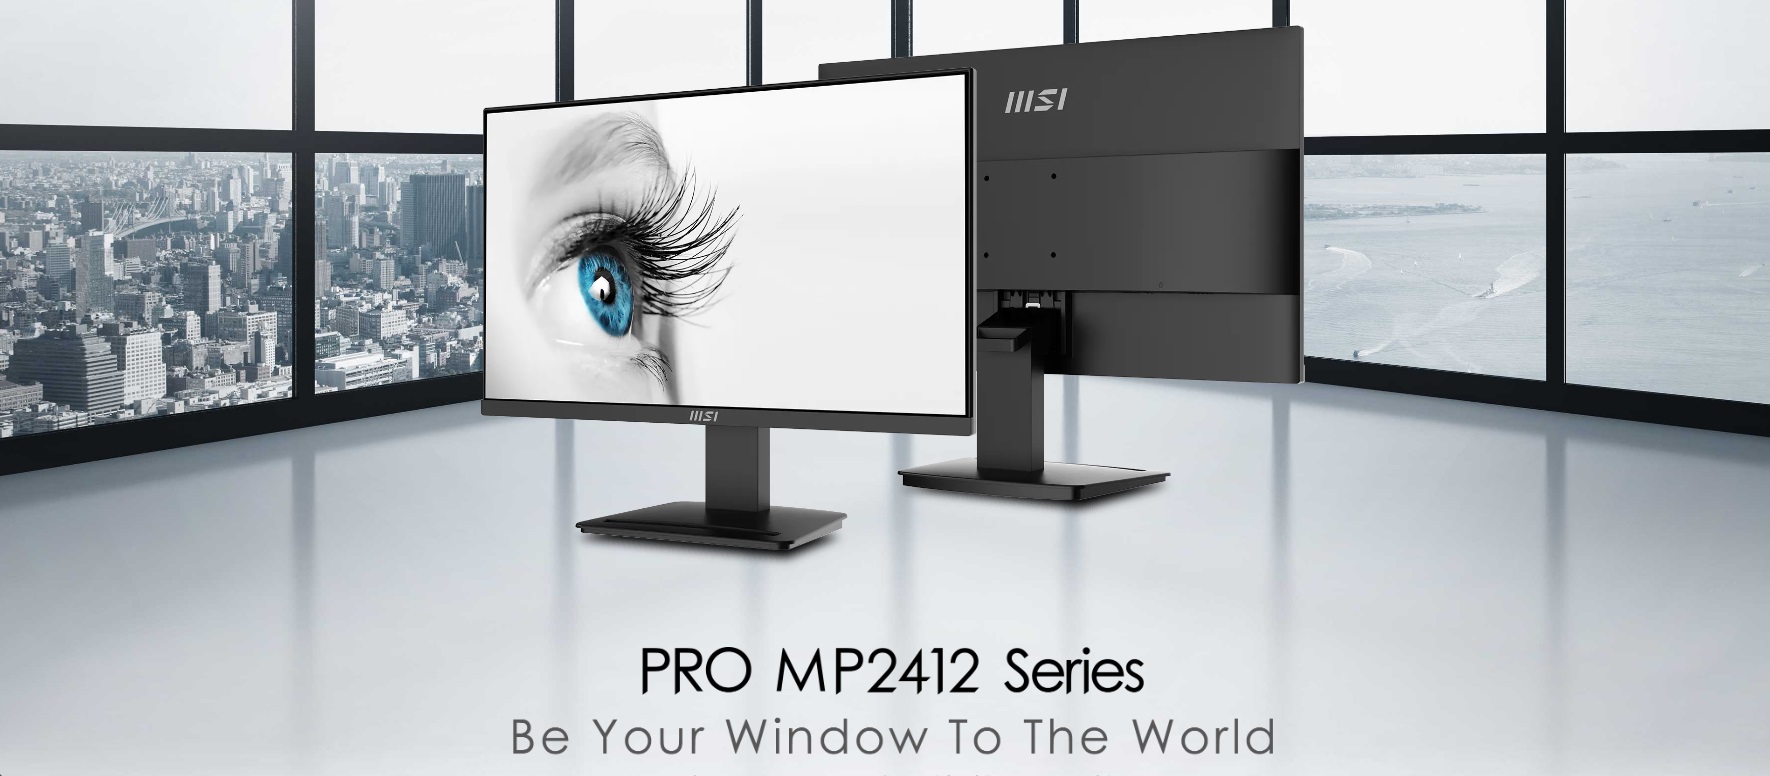 Монитор MSI - PRO MP2412